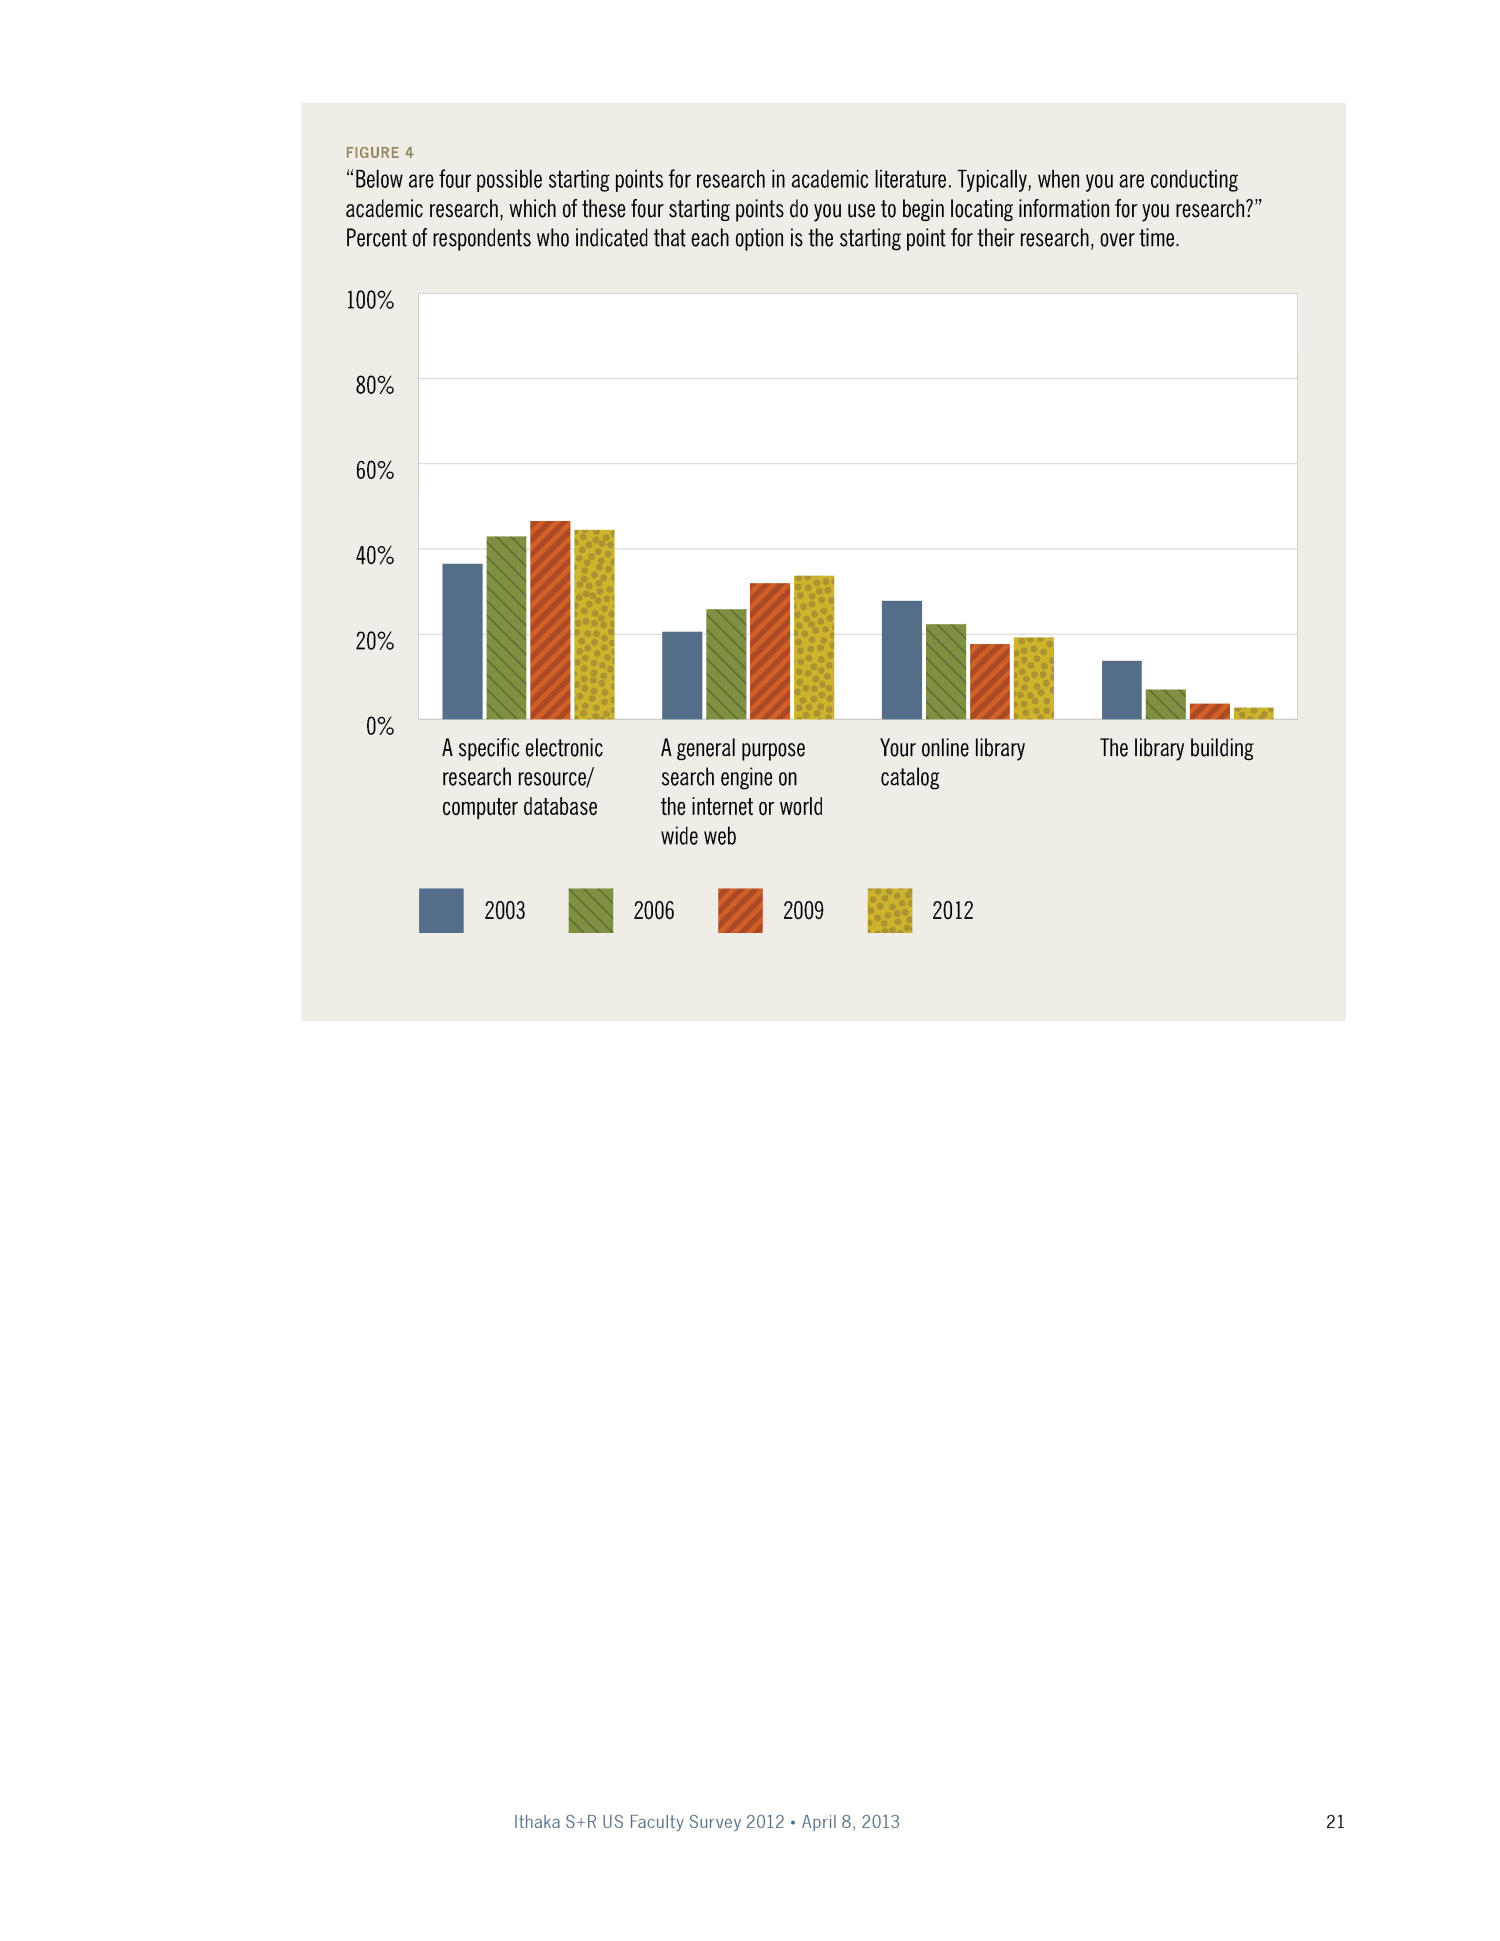 The Ithaka S+R US Faculty Survey 2012
                                                
                                                    21
                                                